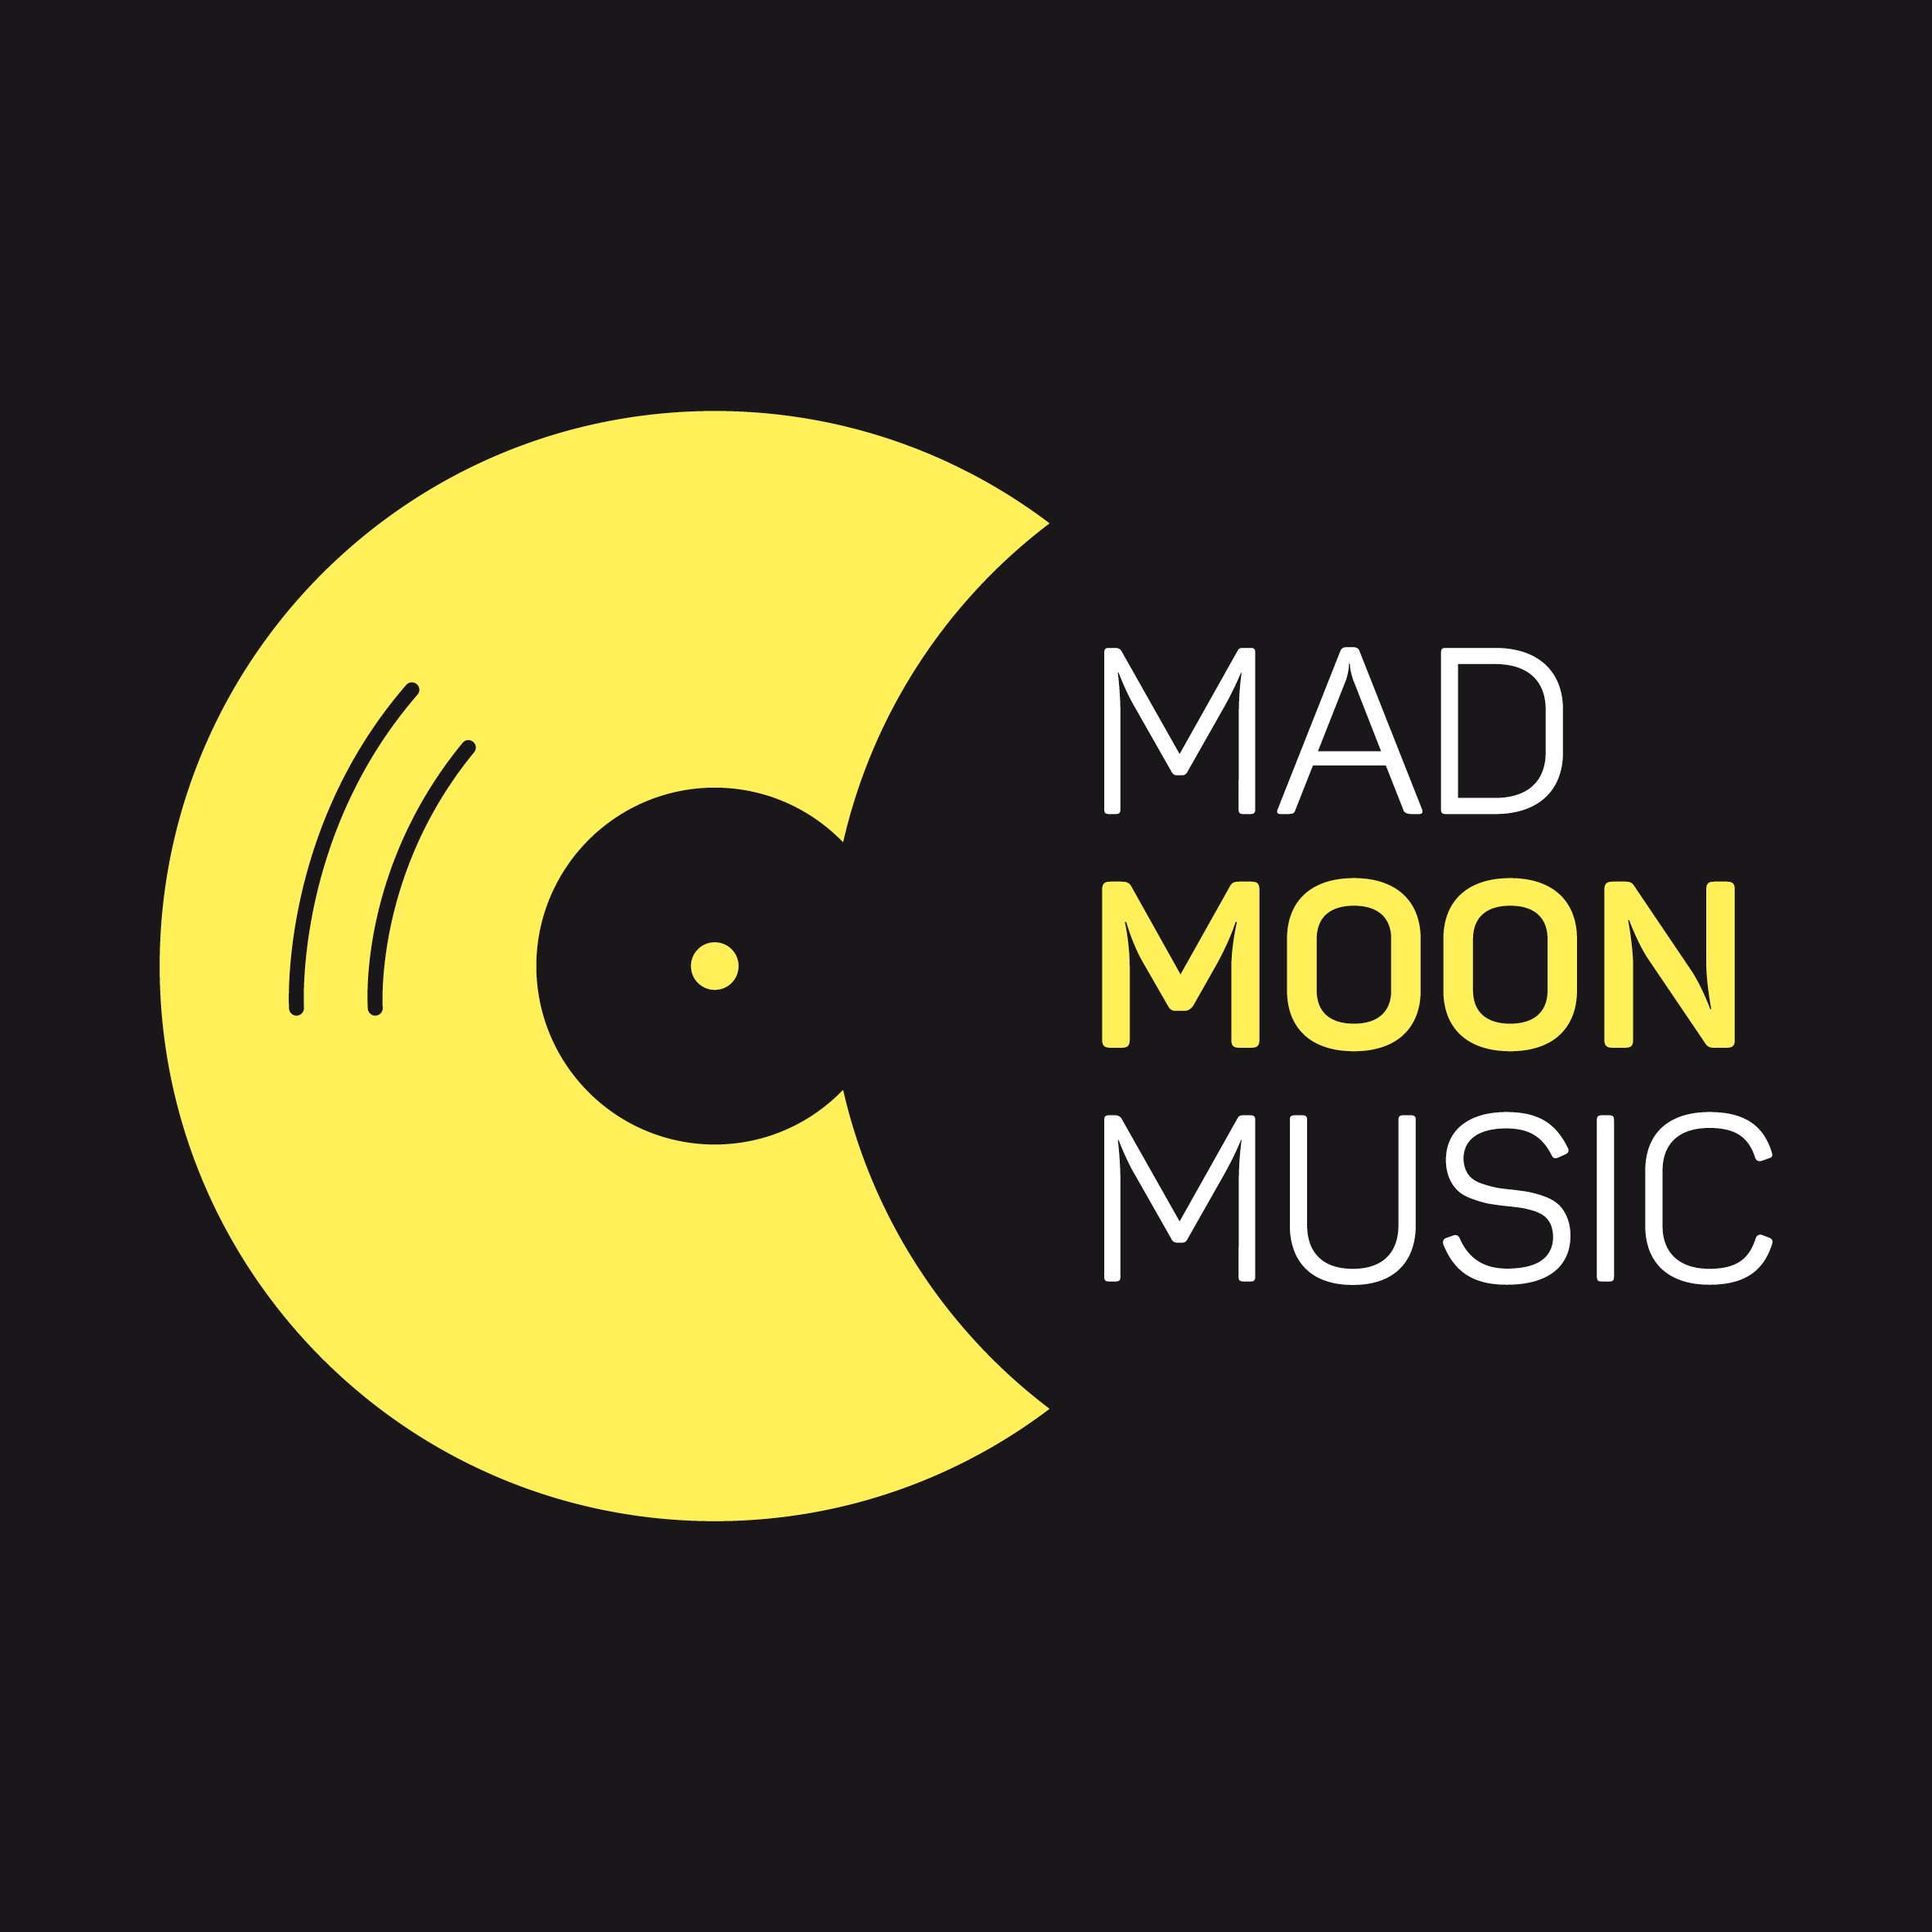 Мун музыка. Мэд Мун. Moon Music. Frantic Moon. Moon Music logo.